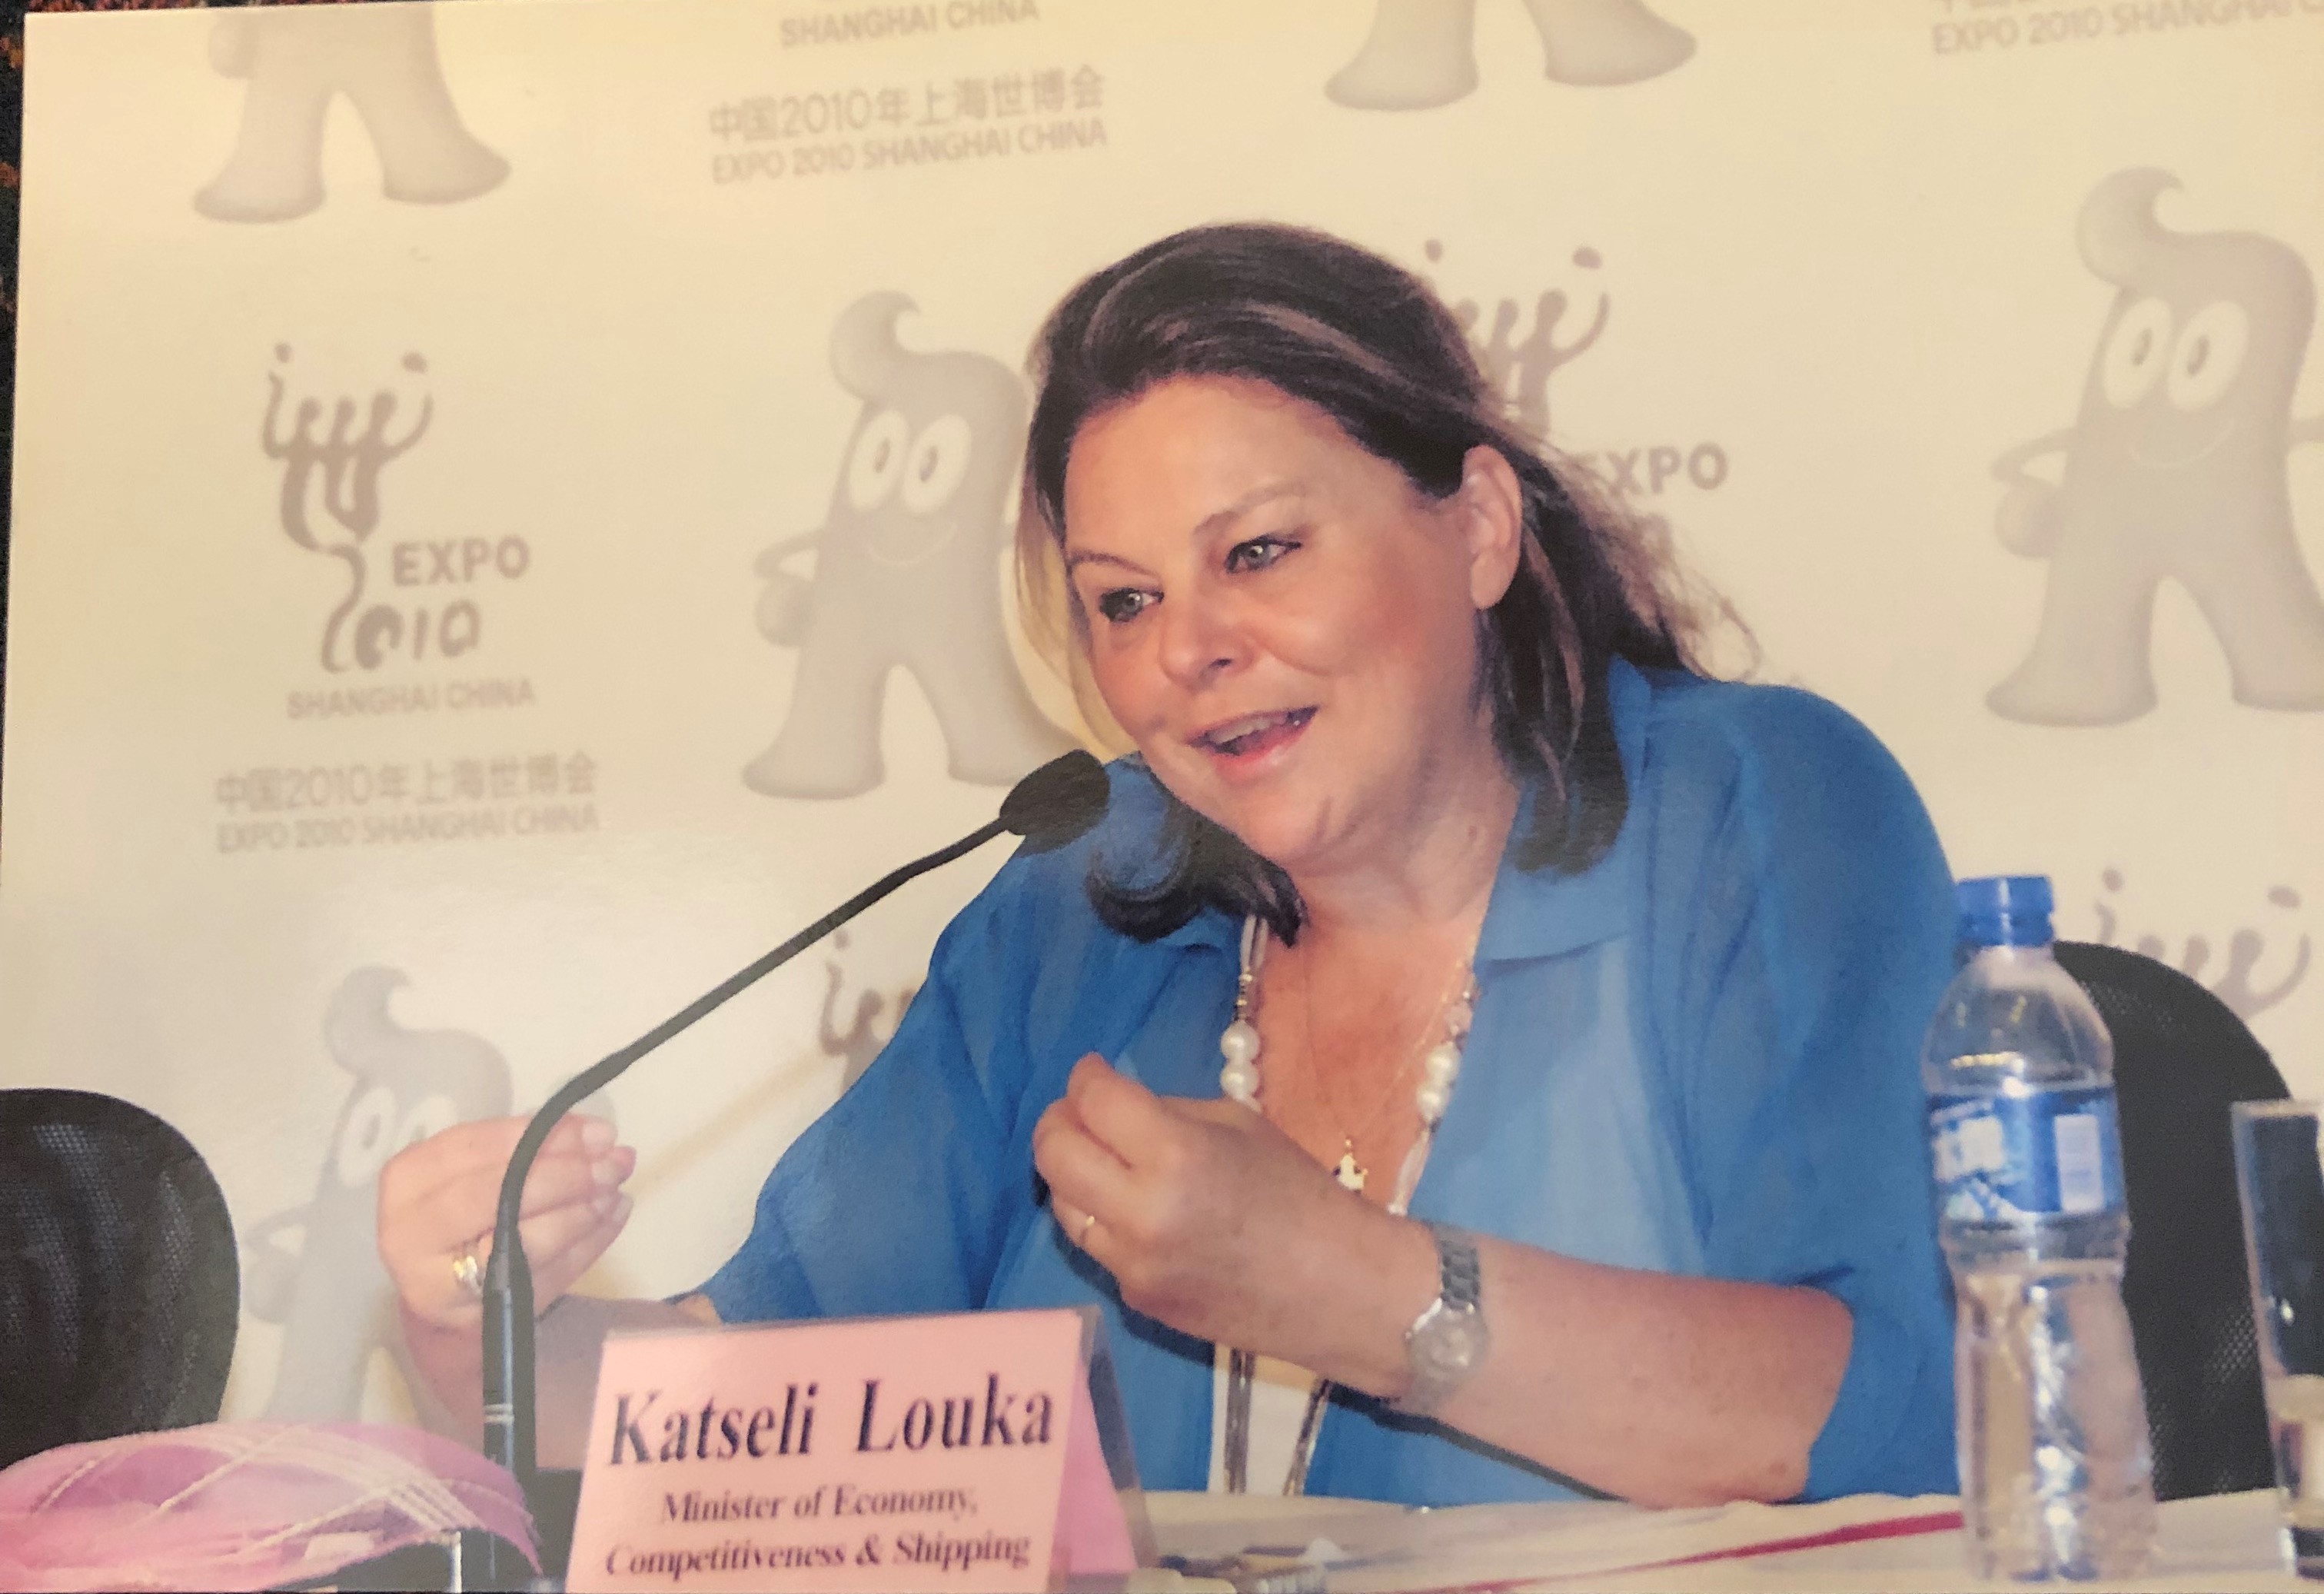 Η Λούκα Κατσέλη στο ταξίδι της από τον ΕΟΔ στο ελληνικό υπουργικό συμβούλιο και τη διεθνή αναπτυξιακή κοινότητα